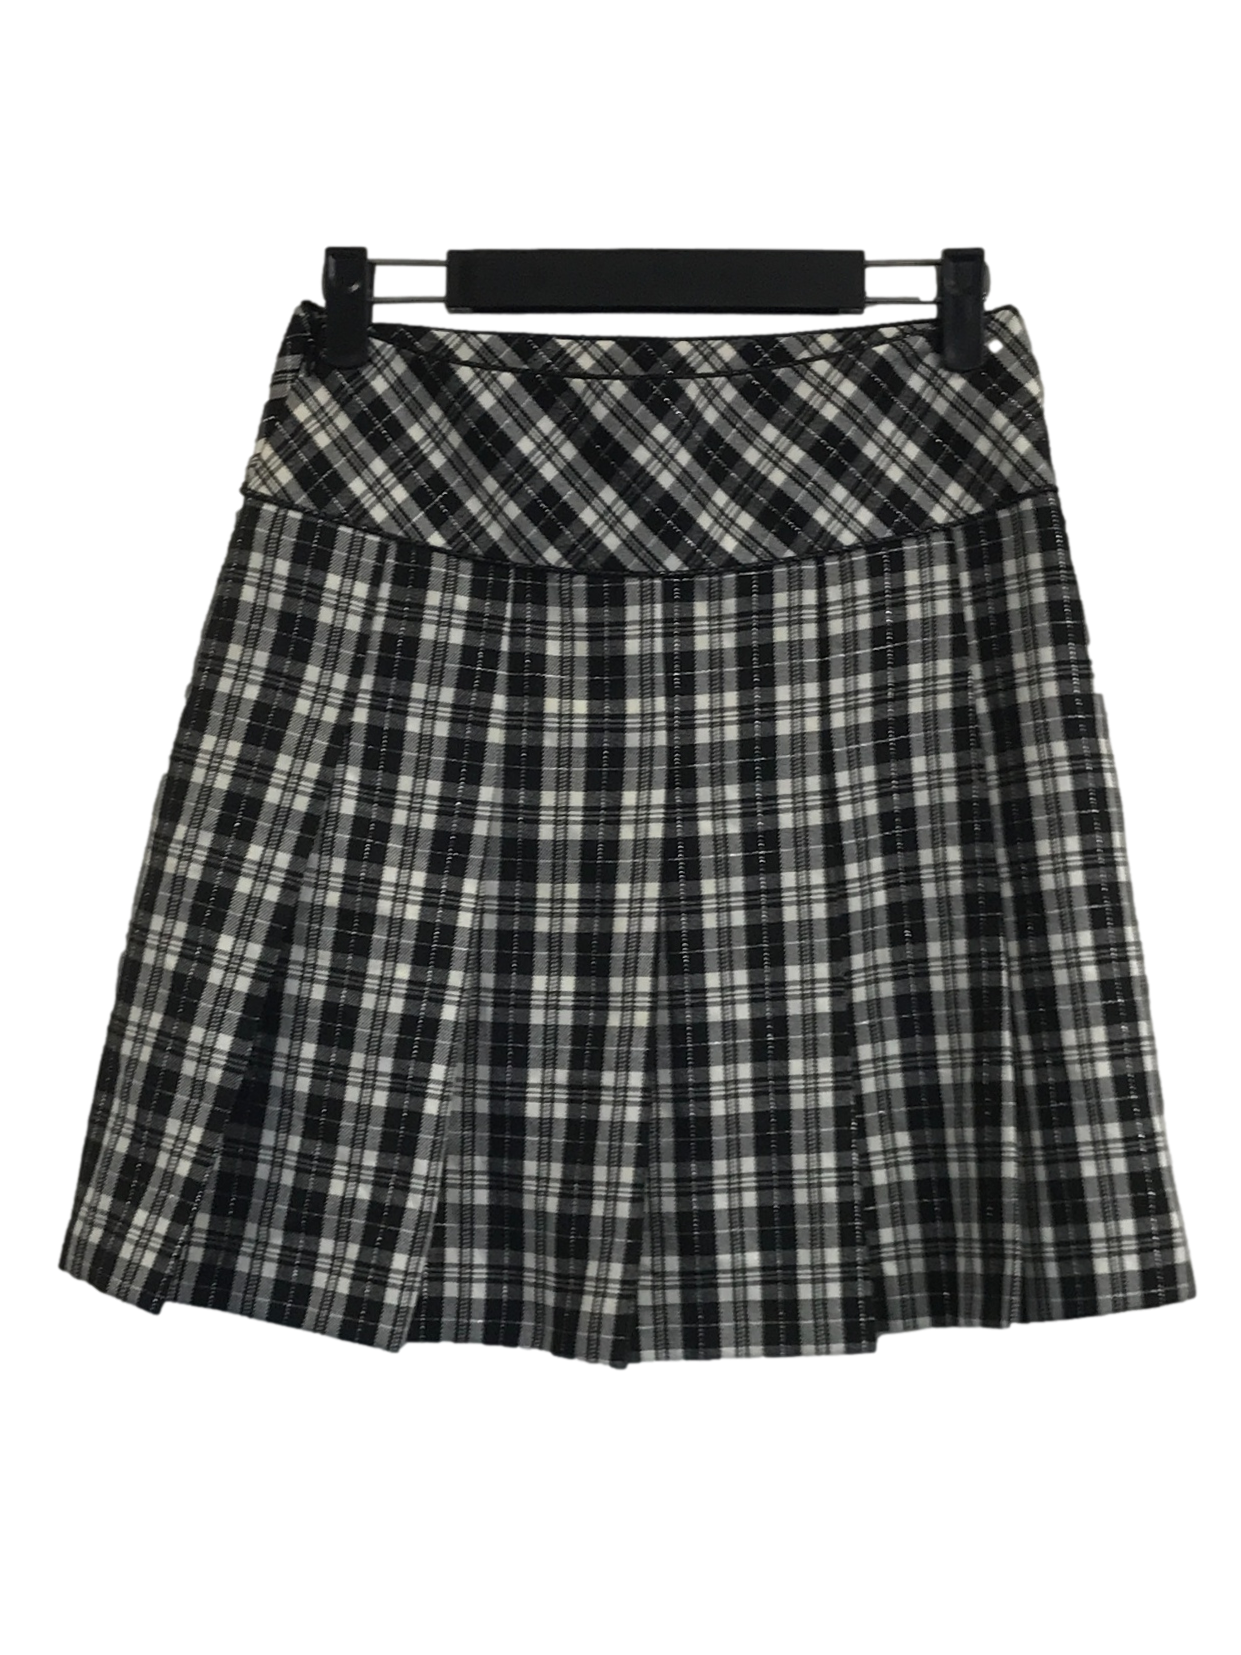 Black & White Tartan Skirt